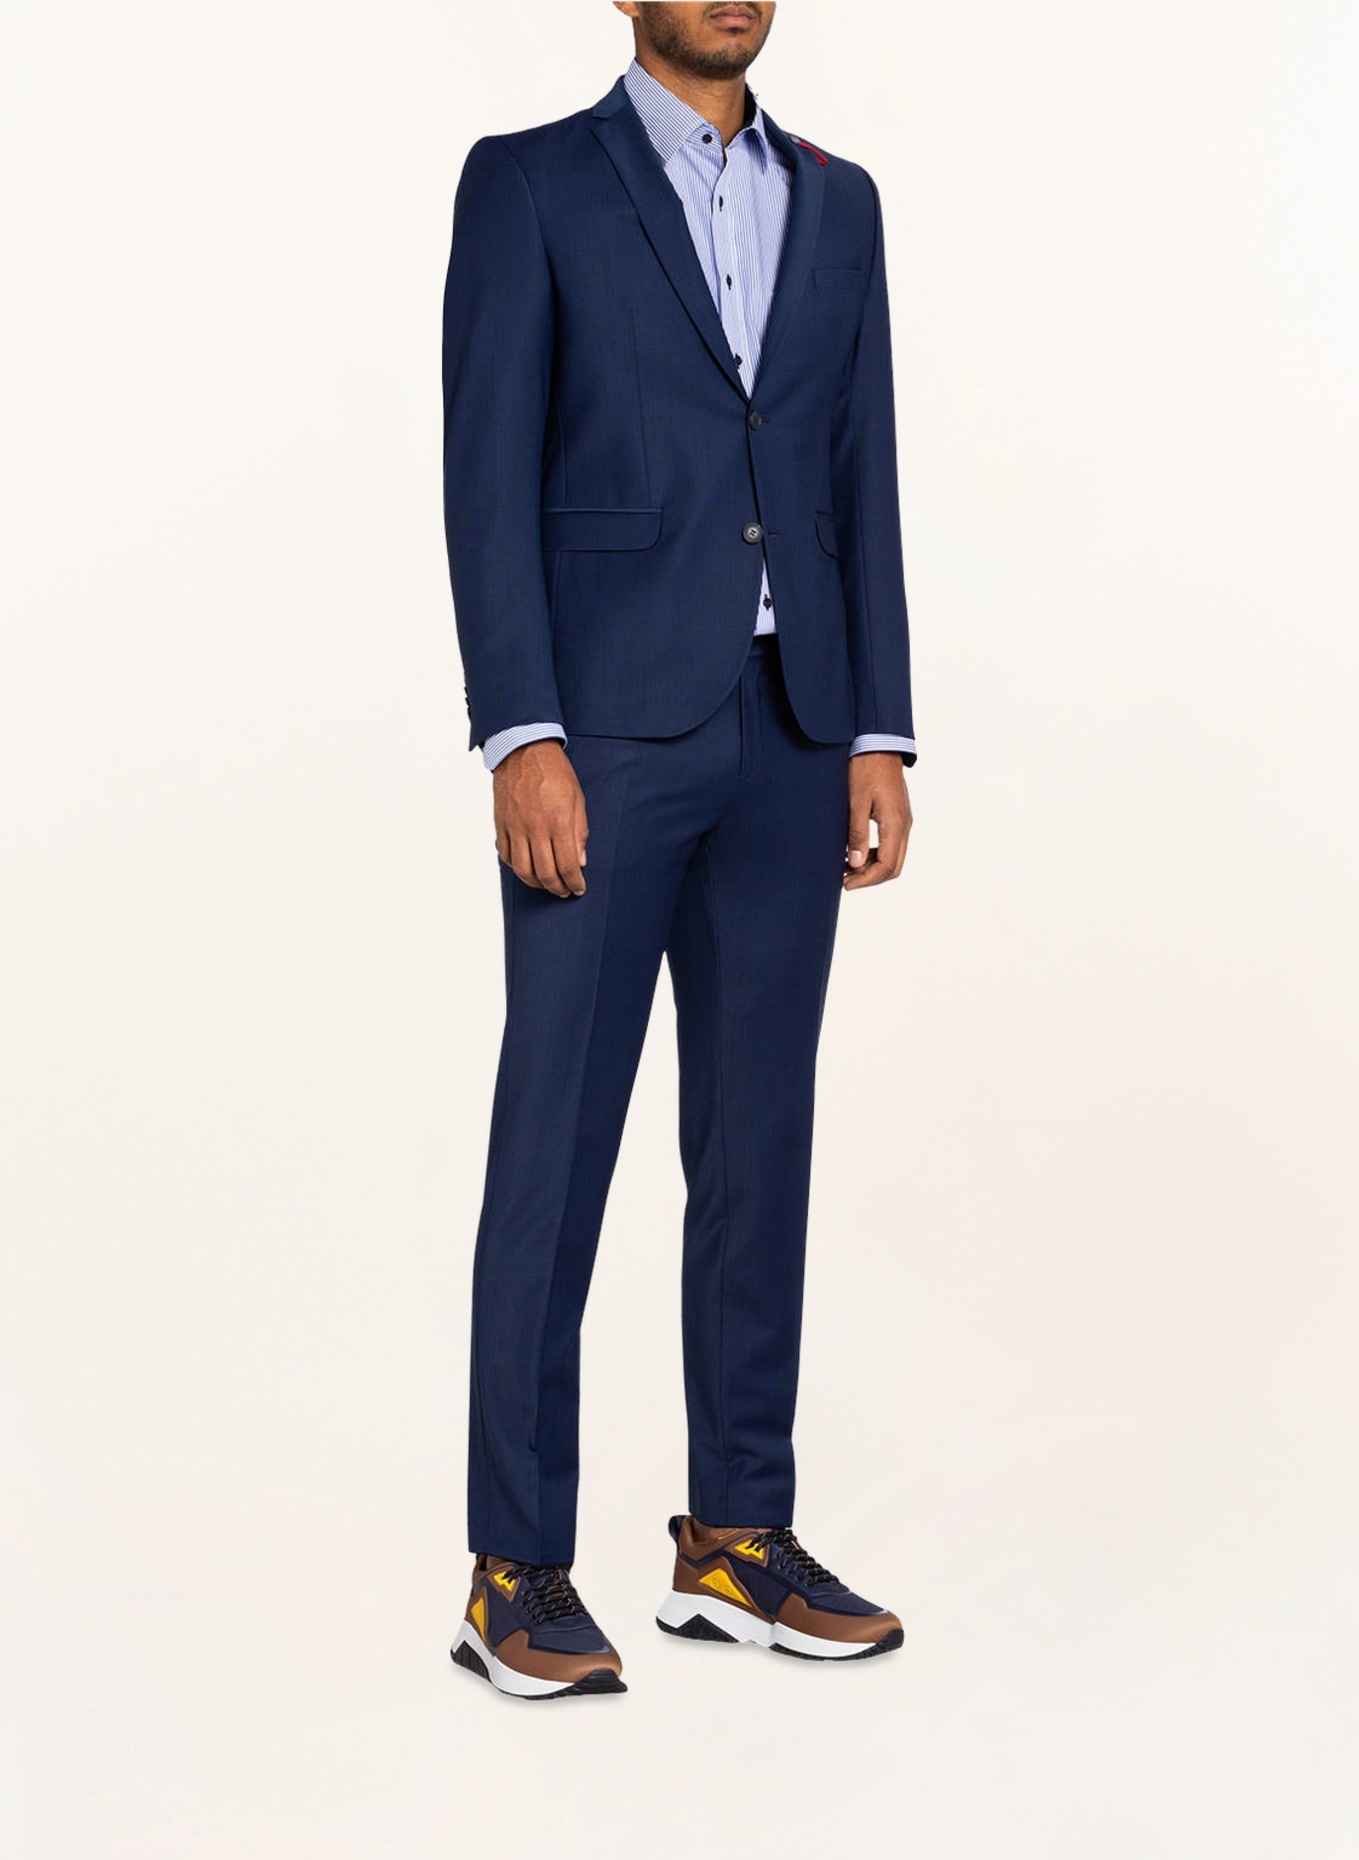 CG - CLUB of GENTS Suit jacket CADEN slim fit, Color: 62 BLUE (Image 2)